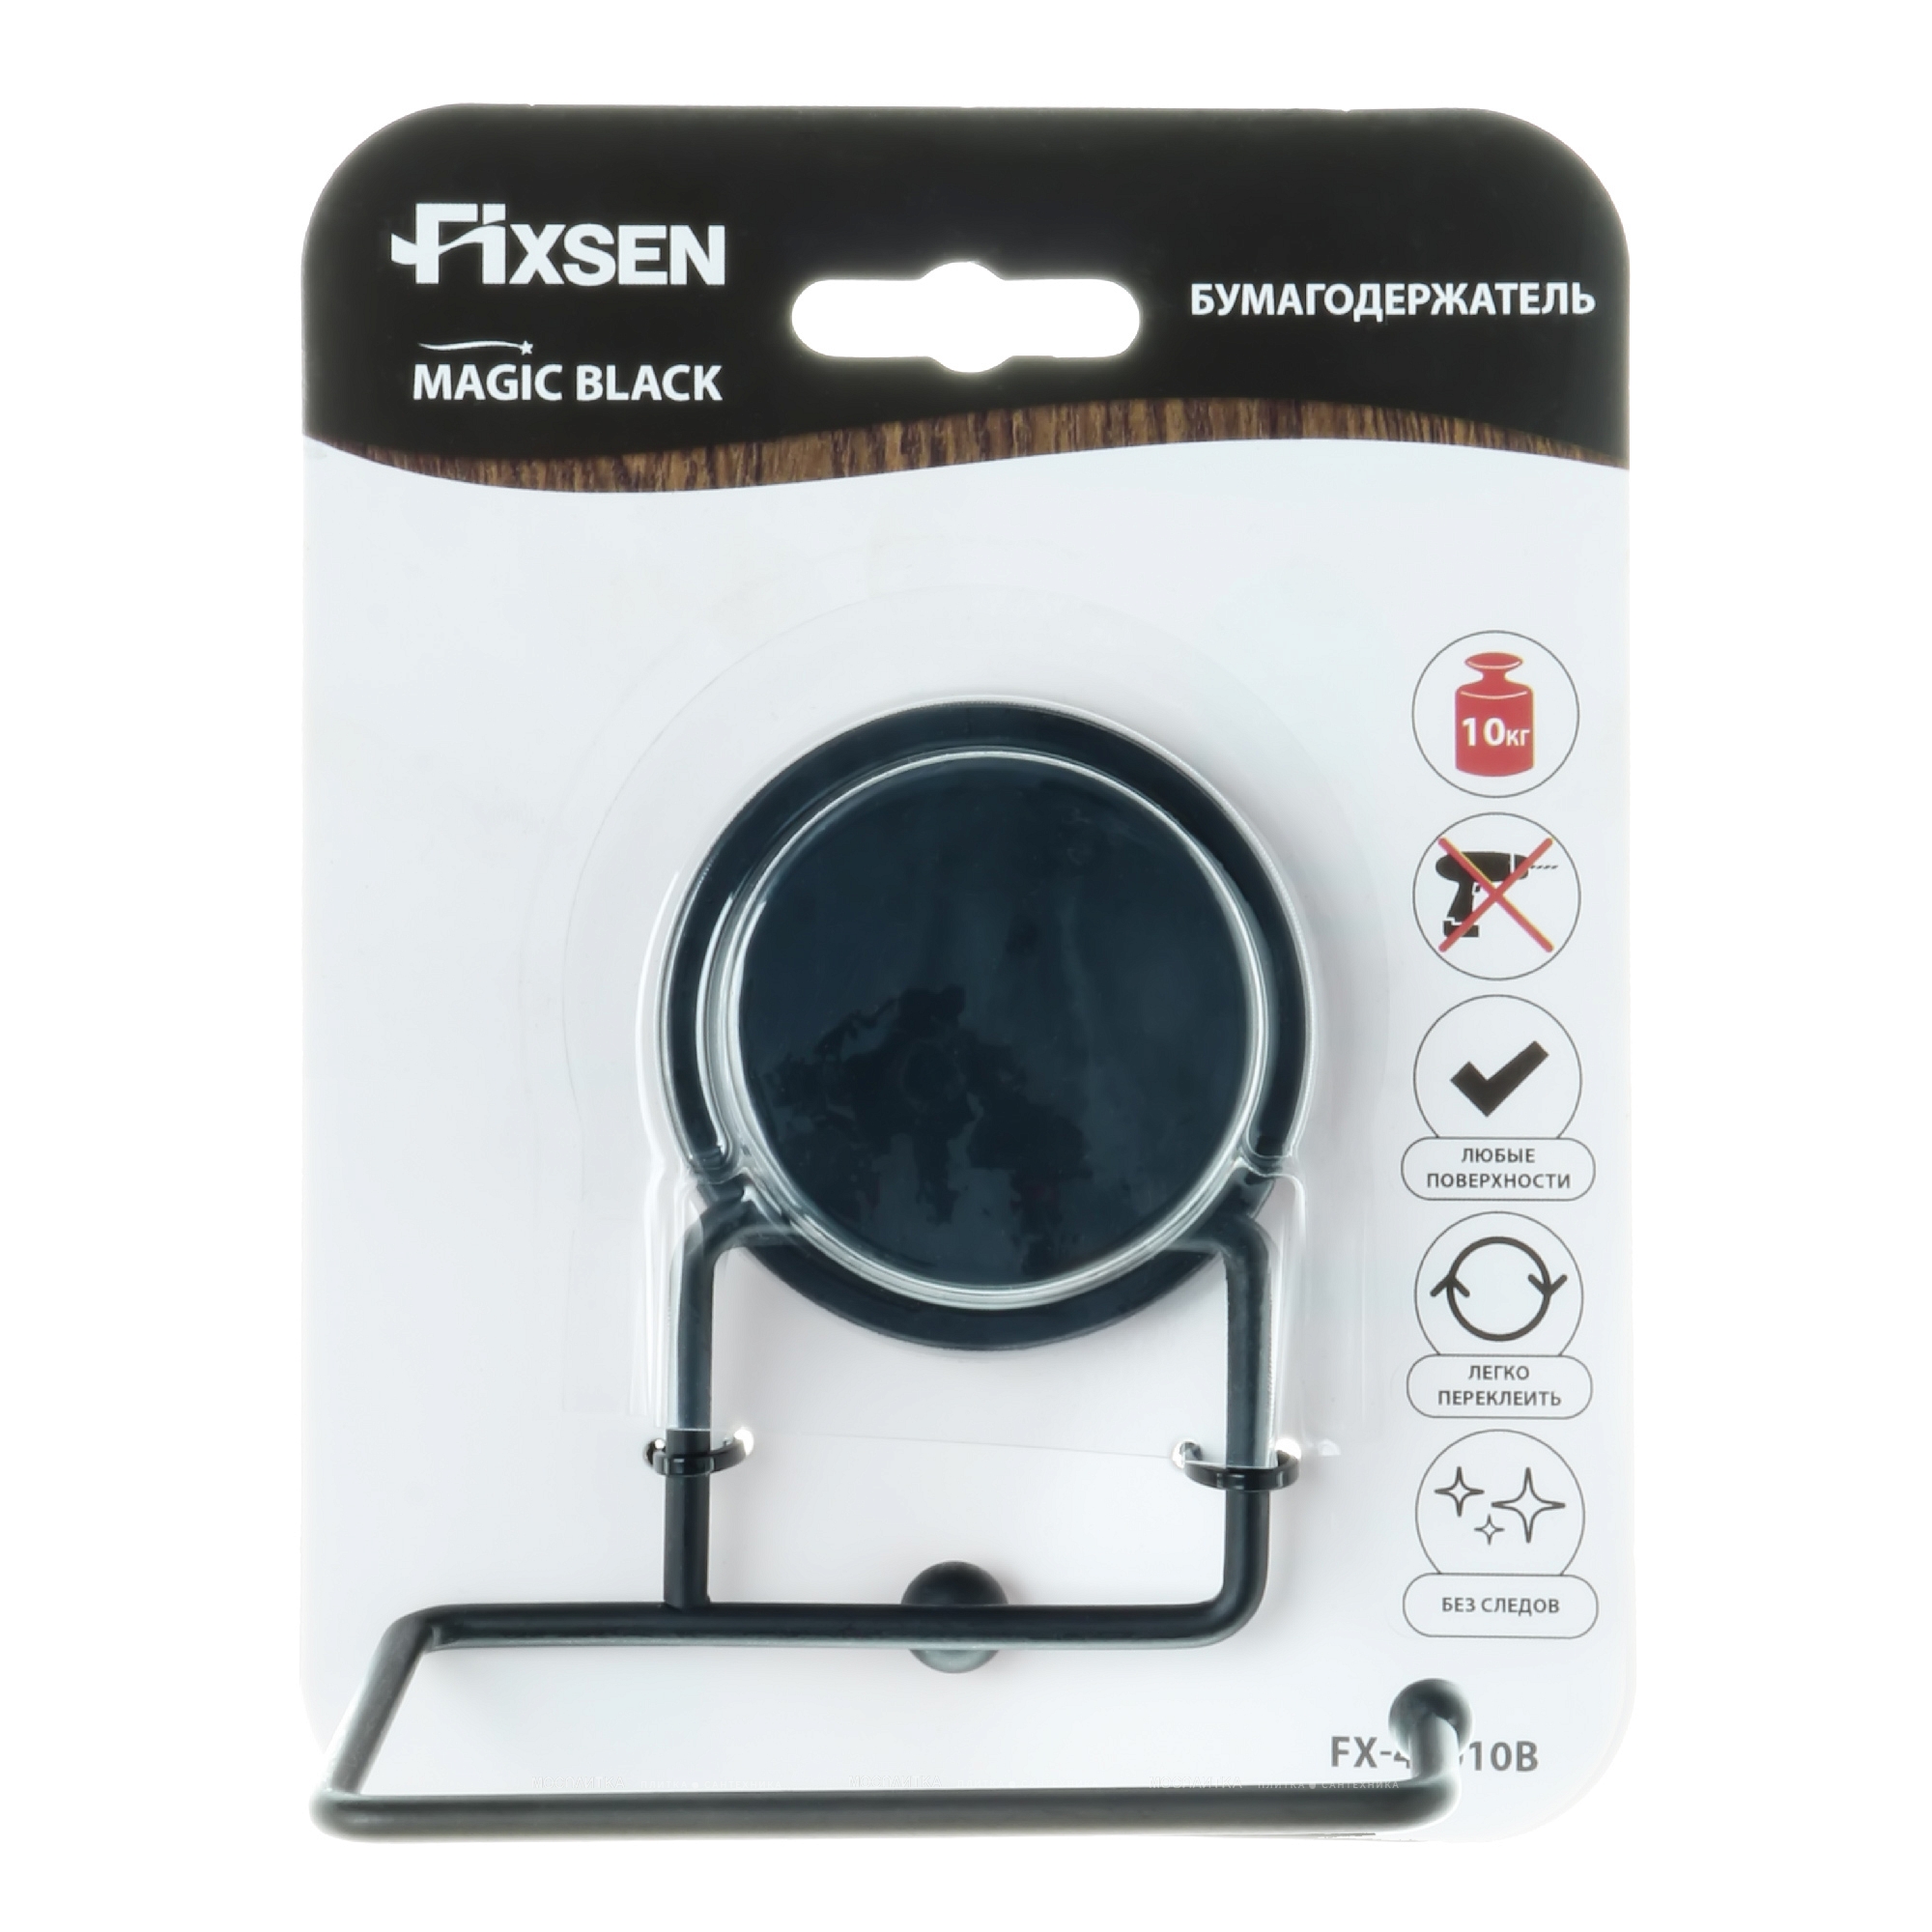 Бумагодержатель Fixsen без крышки Magic Black FX-45010B - изображение 3